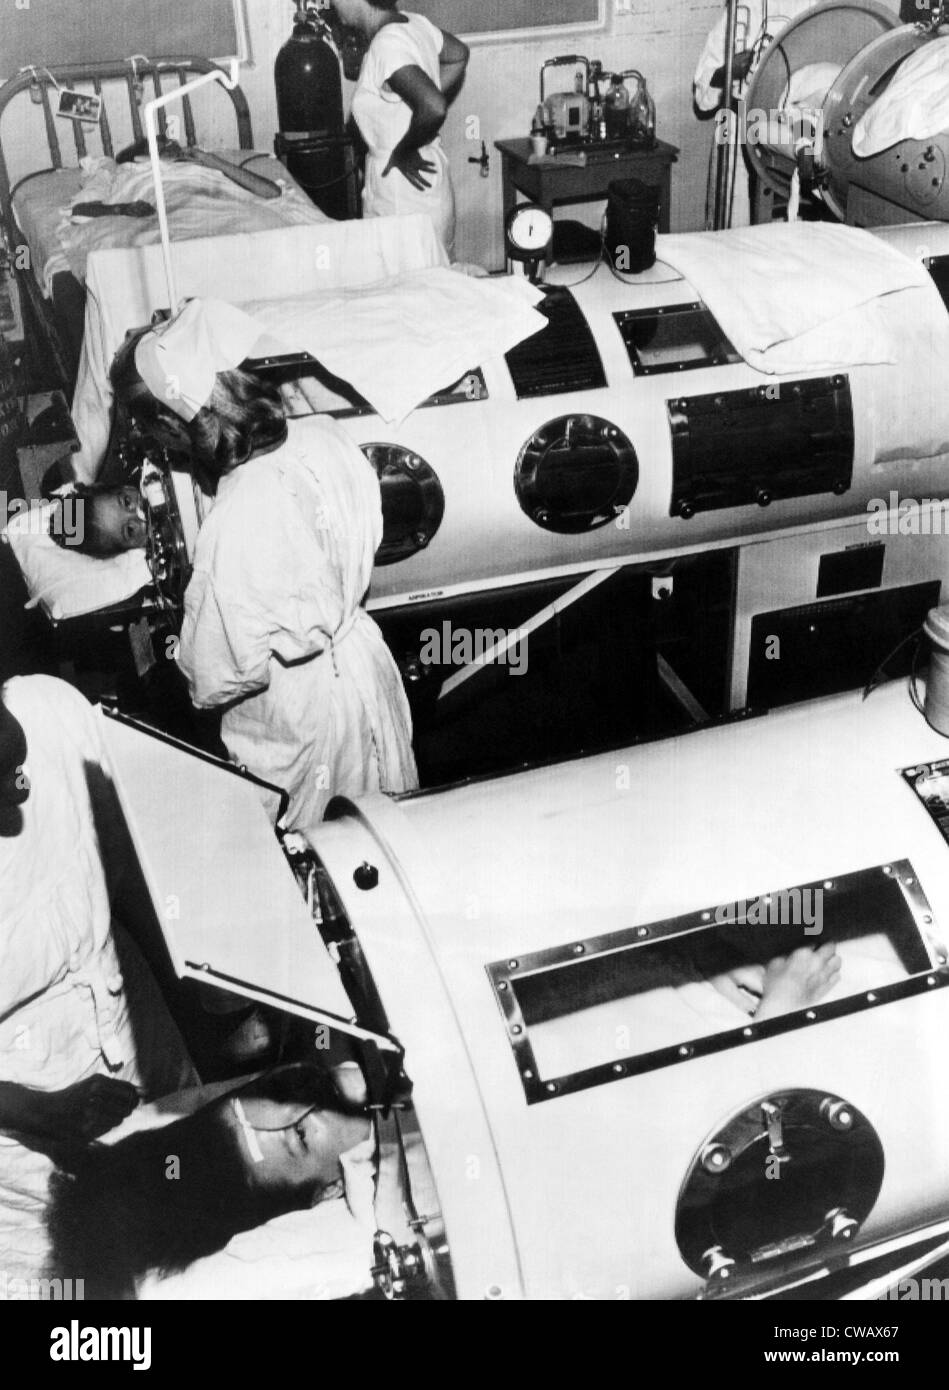 Les patients traités par la poliomyélite poumons d'acier dans un hôpital, vers 1948. Avec la permission de : Archives CSU/Everett Collection Banque D'Images